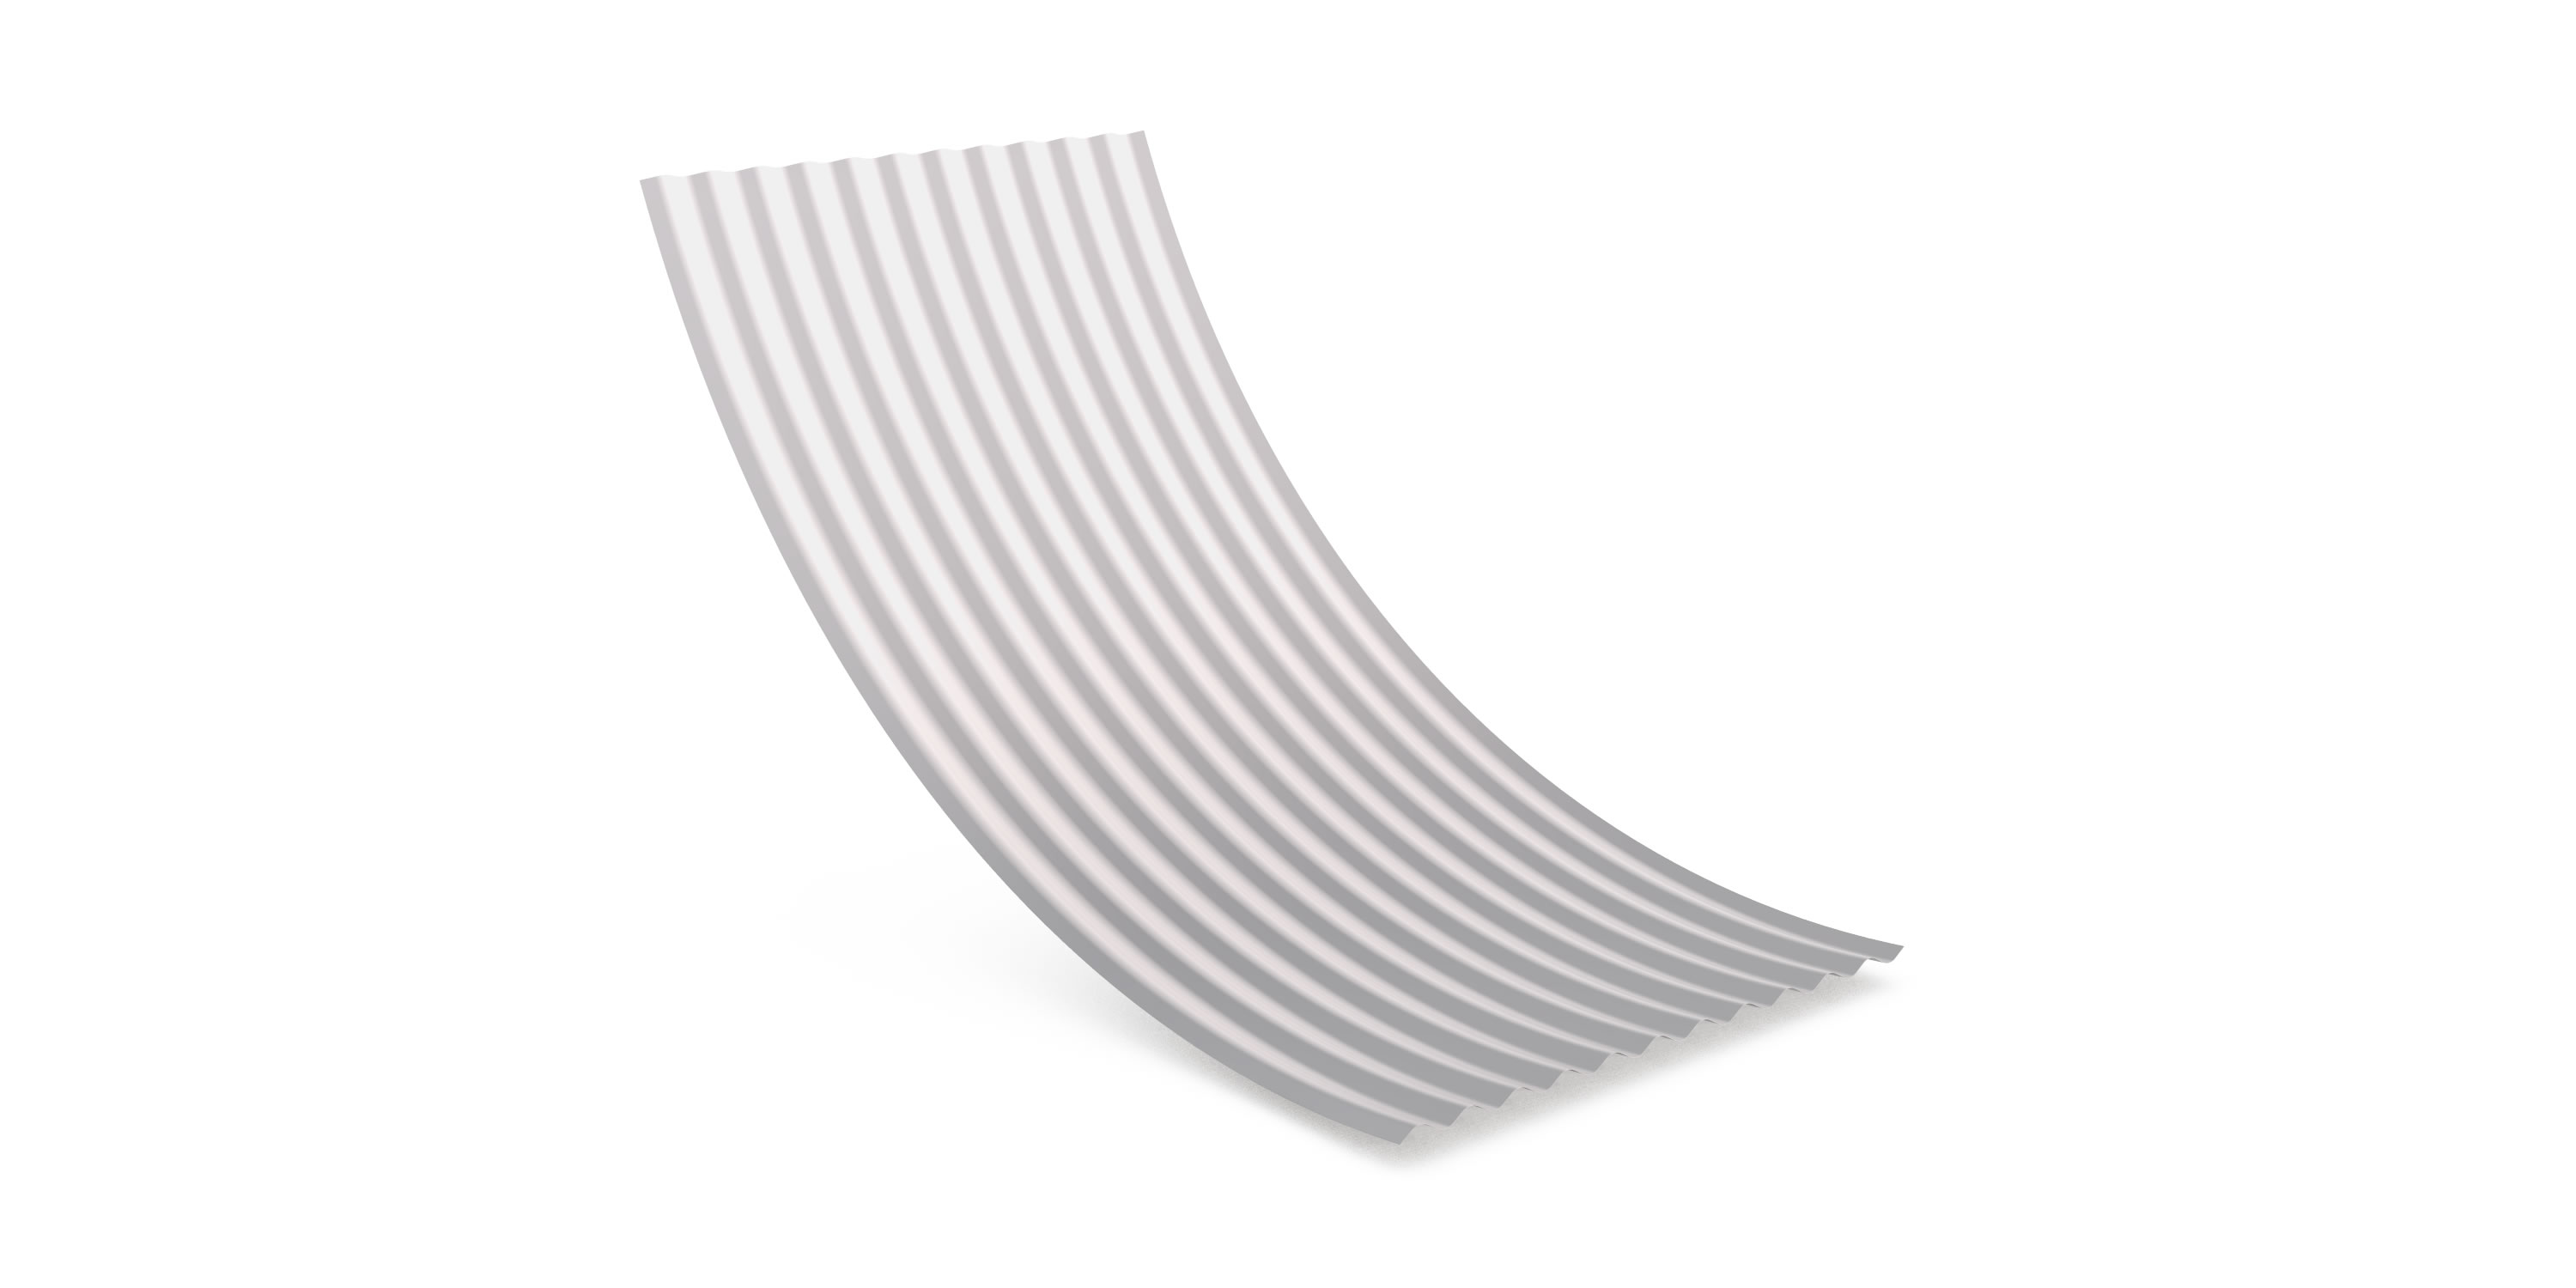 Corrugated Iron – Concave